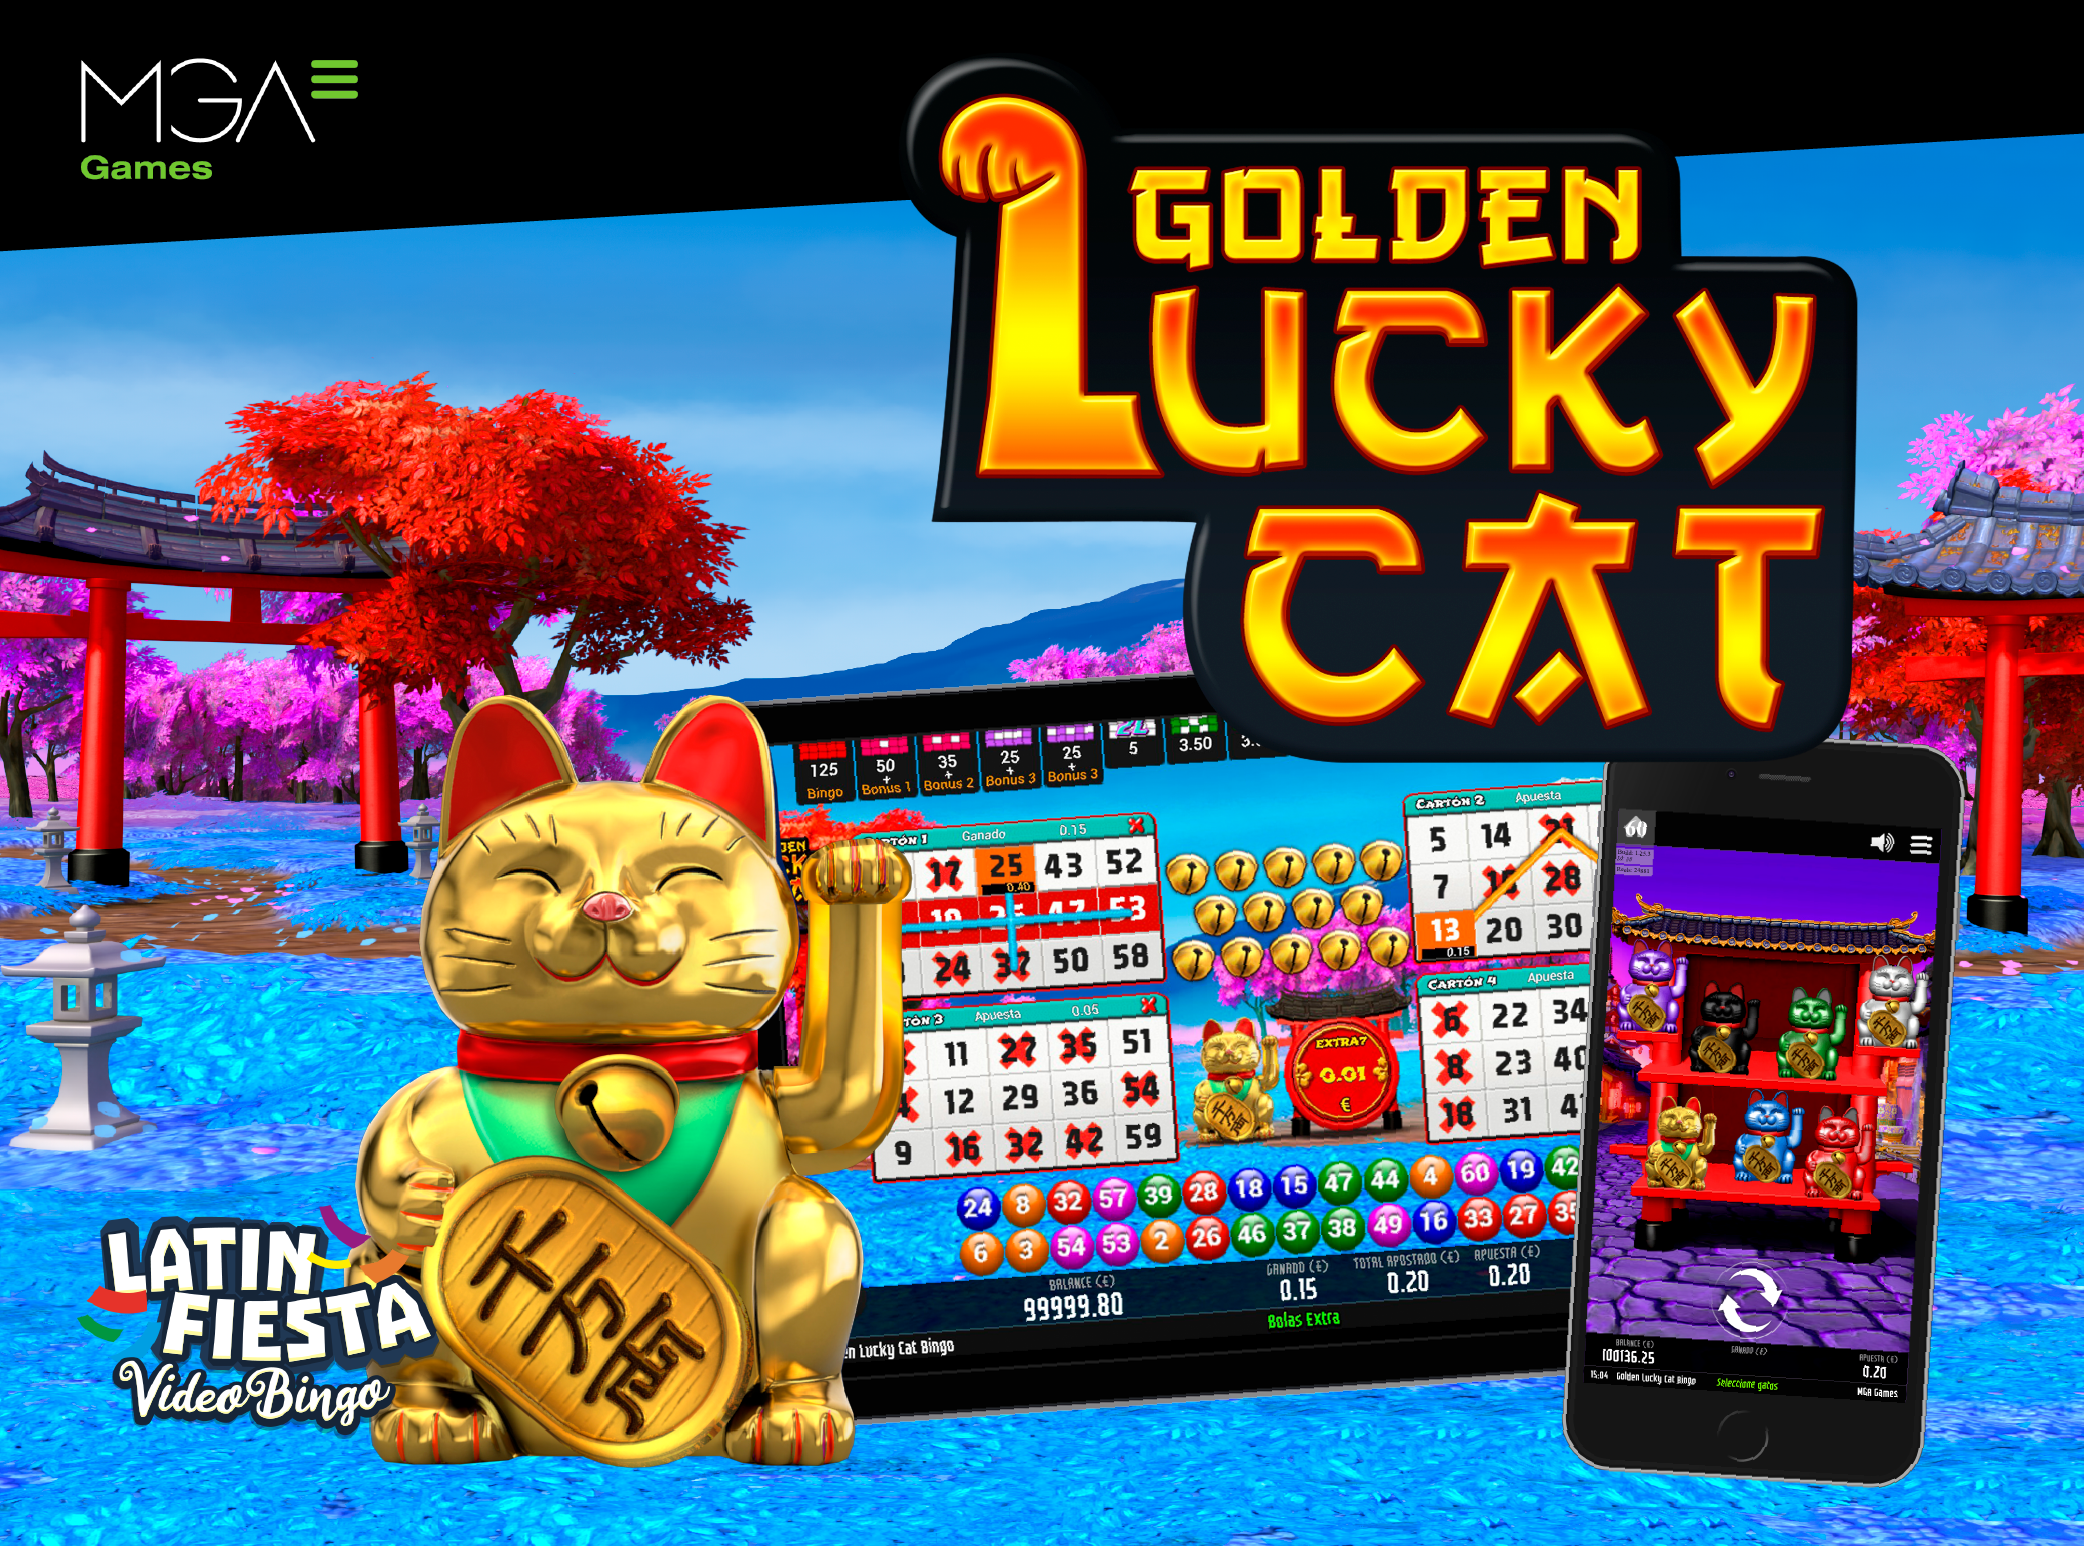 Golden Lucky Cat